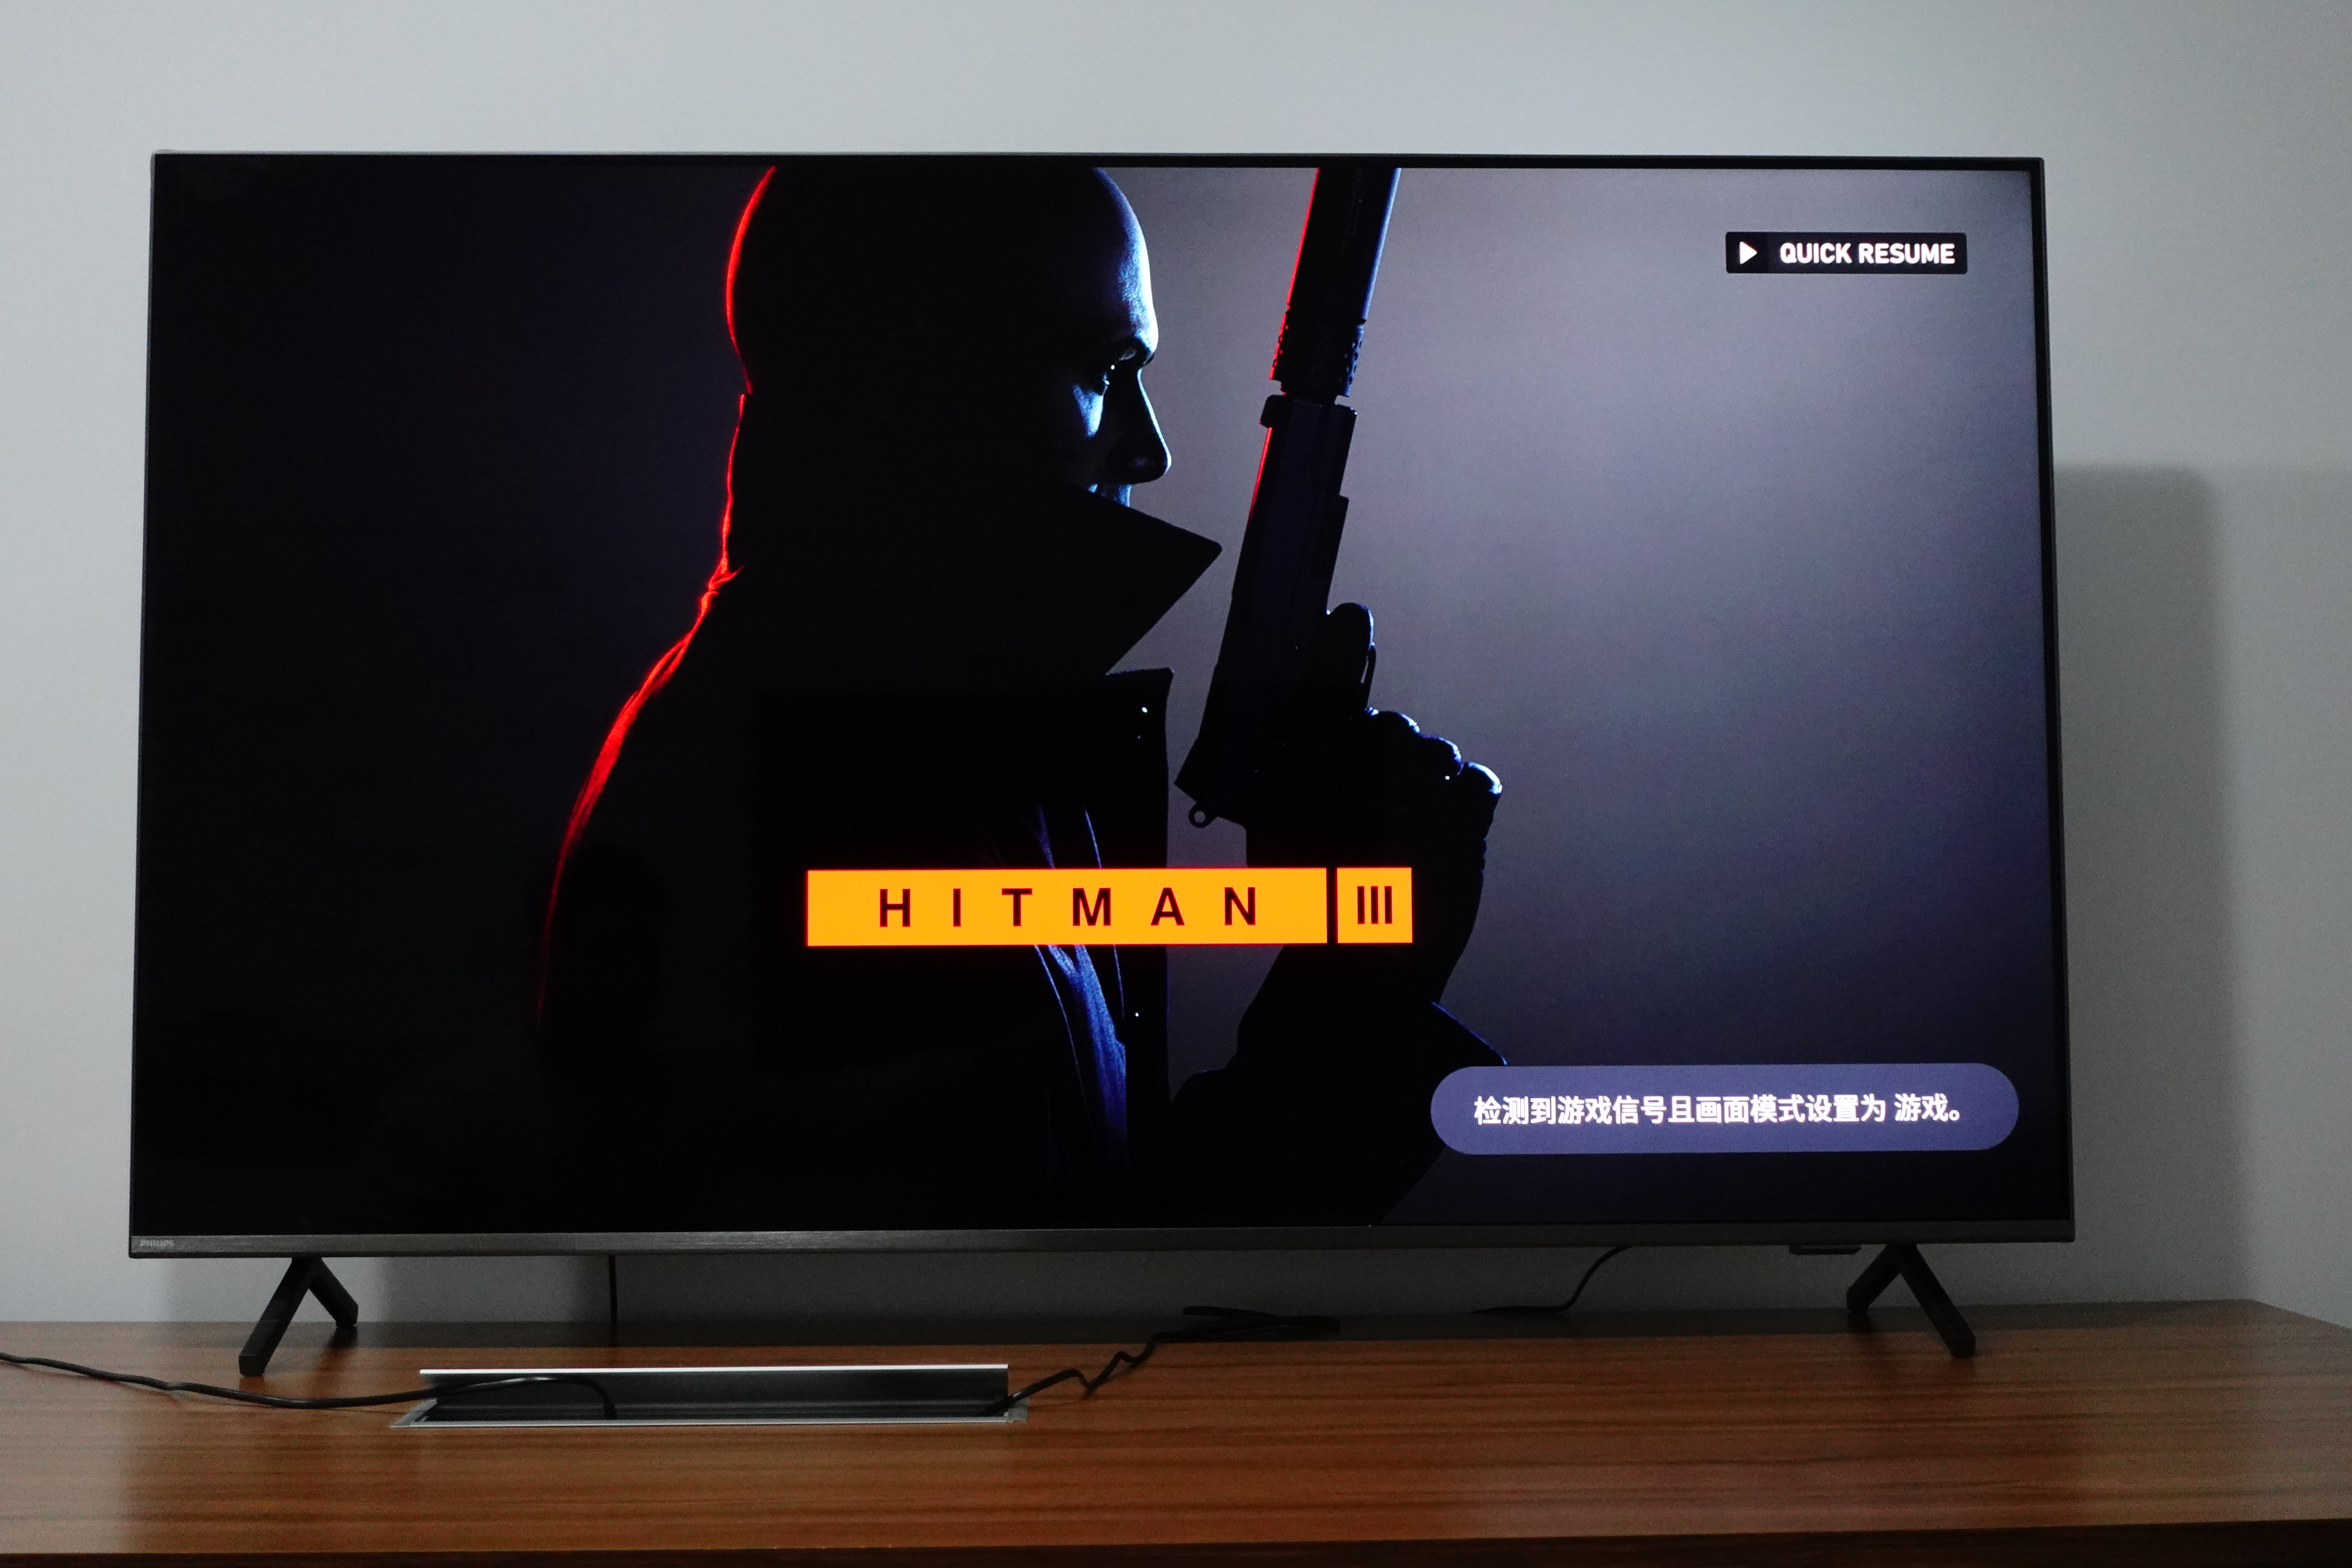 电视系统在 Xbox 启动游戏后自动切换至游戏模式